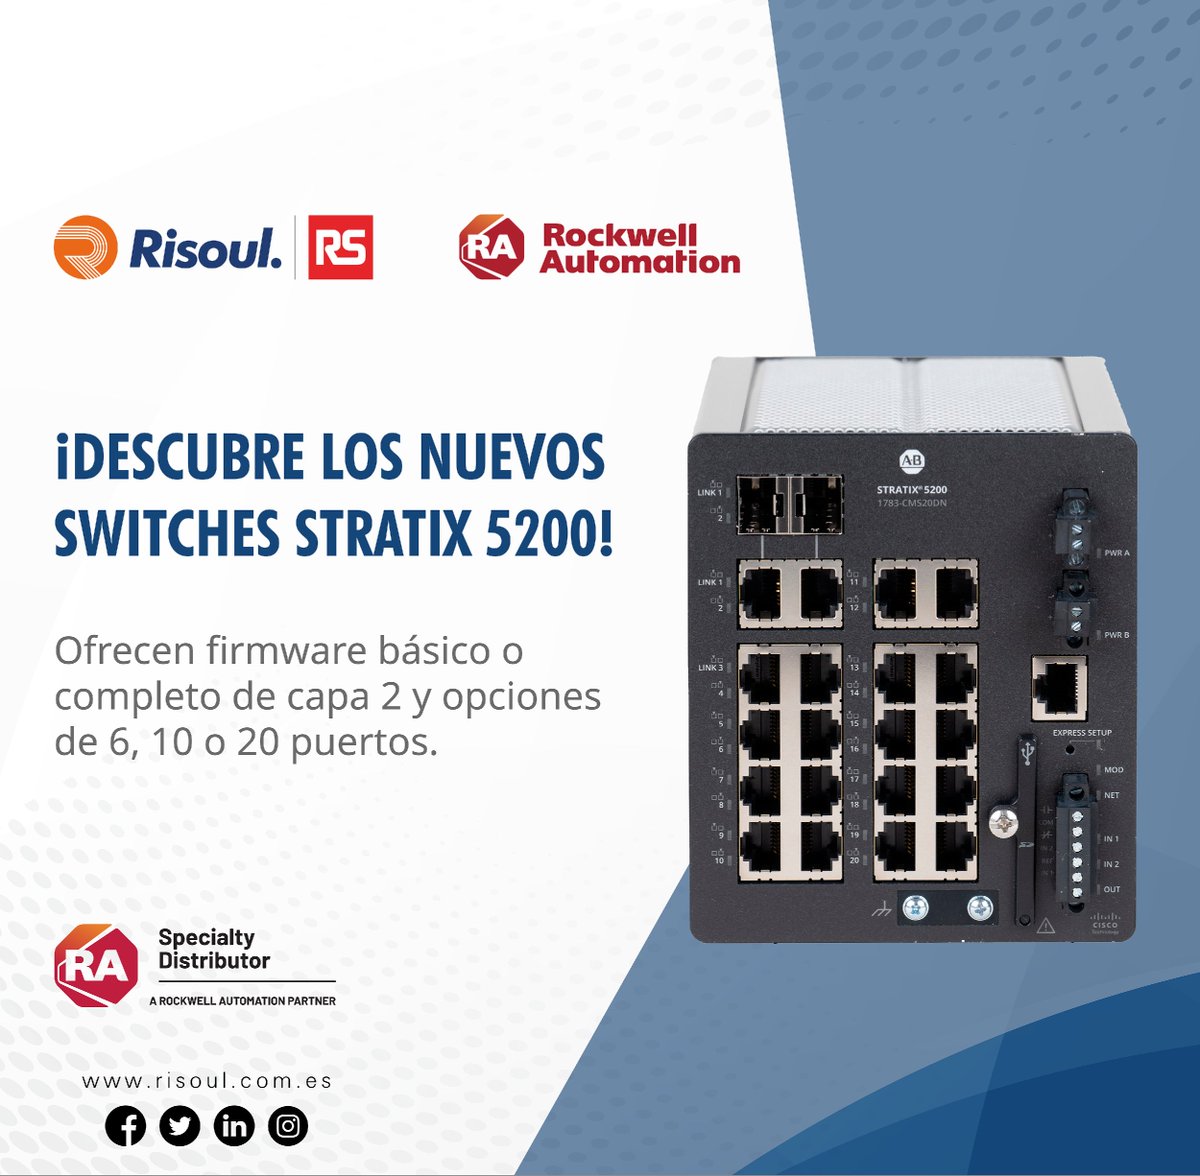 Los switches Stratix 5200 se adaptan a tus necesidades con la plataforma Cisco IOS® XE y una interfaz web amigable.
#SomosRS #HacemosQueSucedaLoIncreíble #PorUnMundoMejor

Contáctanos para más información: hubs.la/Q02t5yFY0